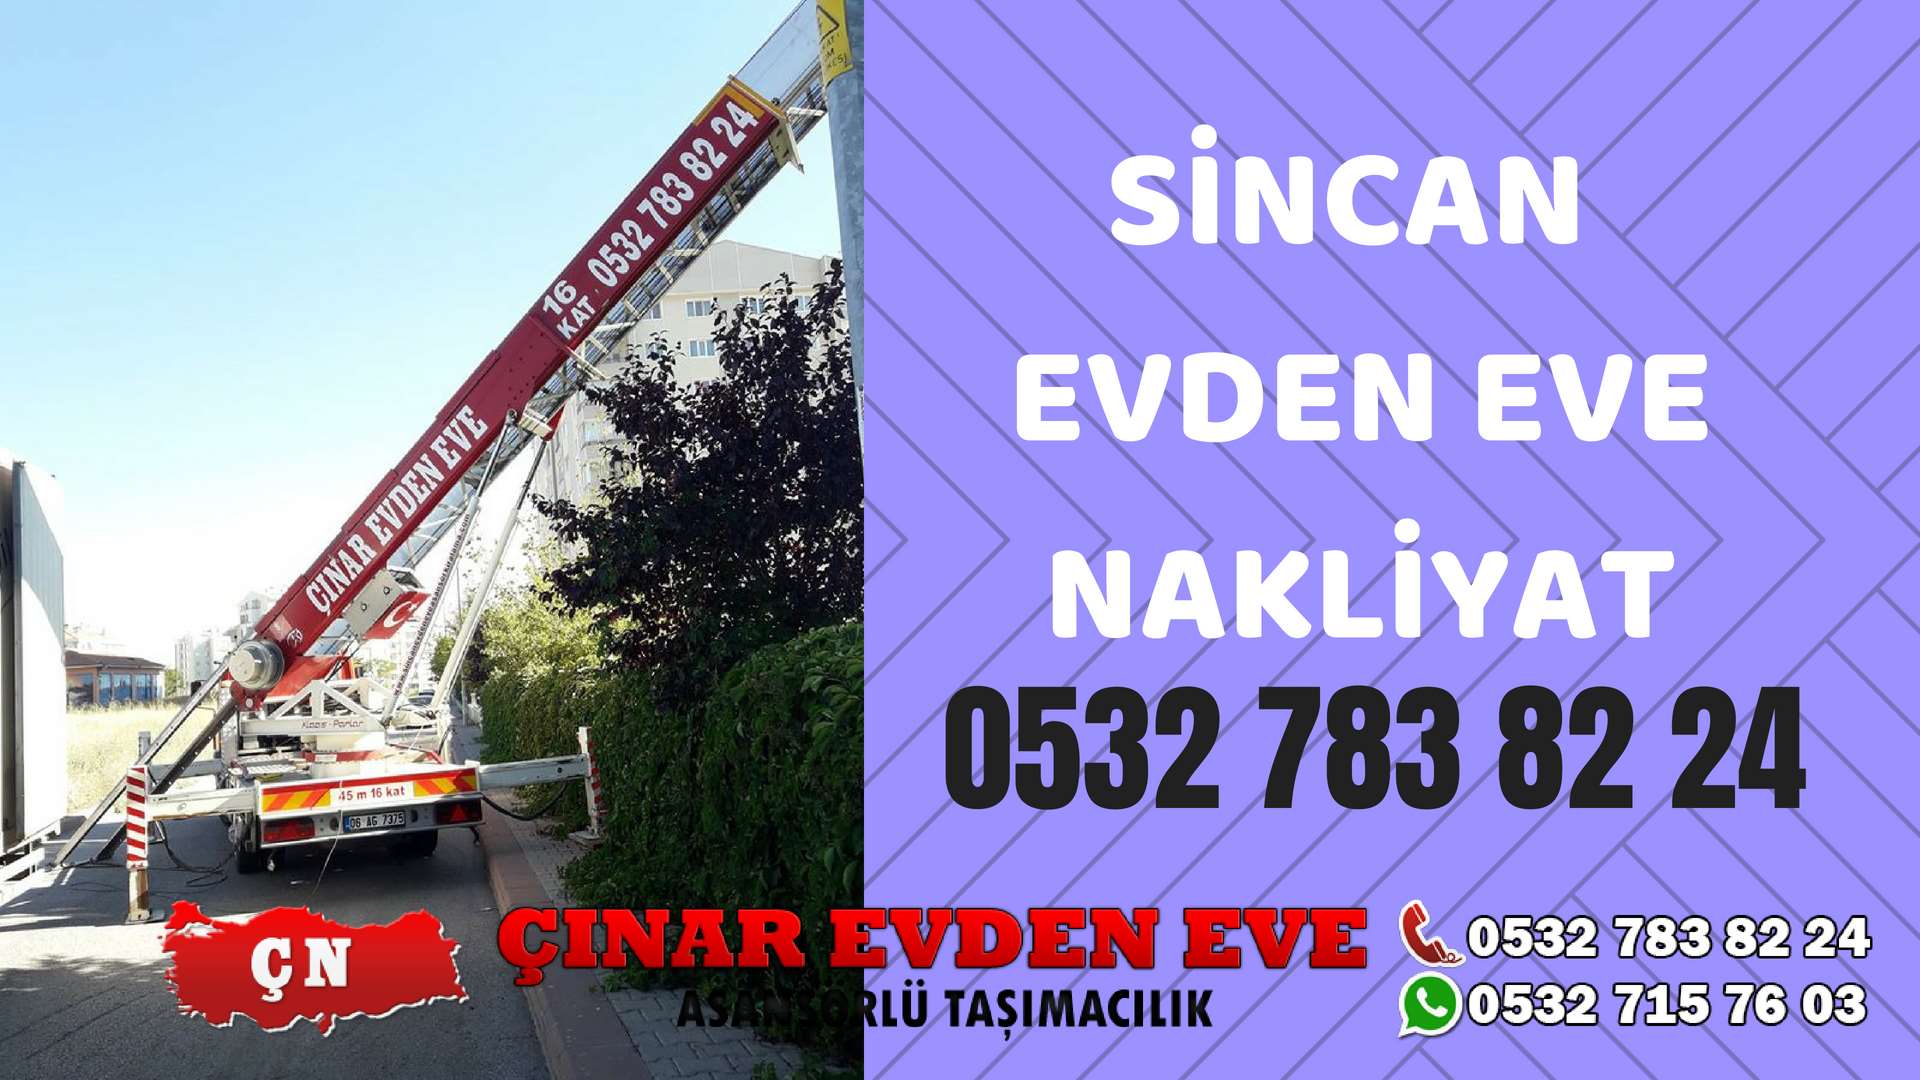 Ankara Kızılcahamam Sincan Evden Eve Nakliyat, Asansörlü Taşıma Çınar Nakliyat Sincan 0532 715 76 03